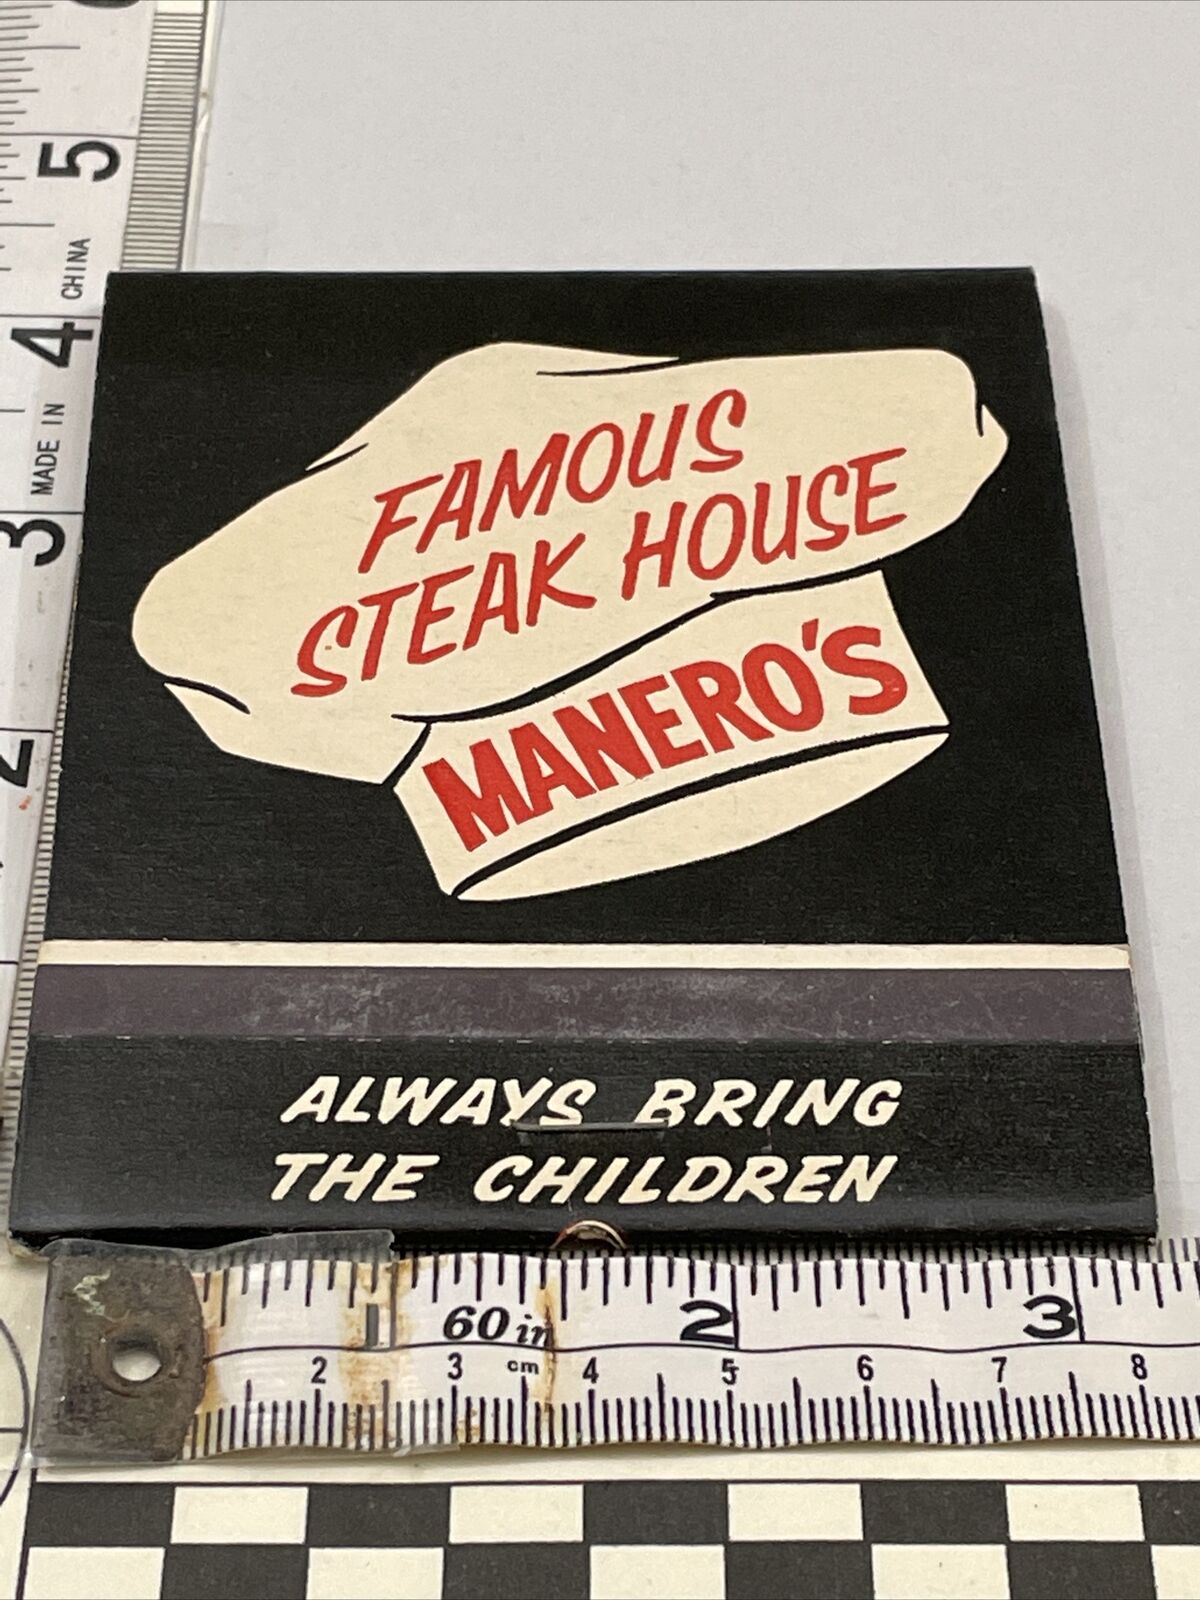 Giant  Feature Matchbook  Manero’s Famous Steak House  Rochelle Park, NJ  gmg